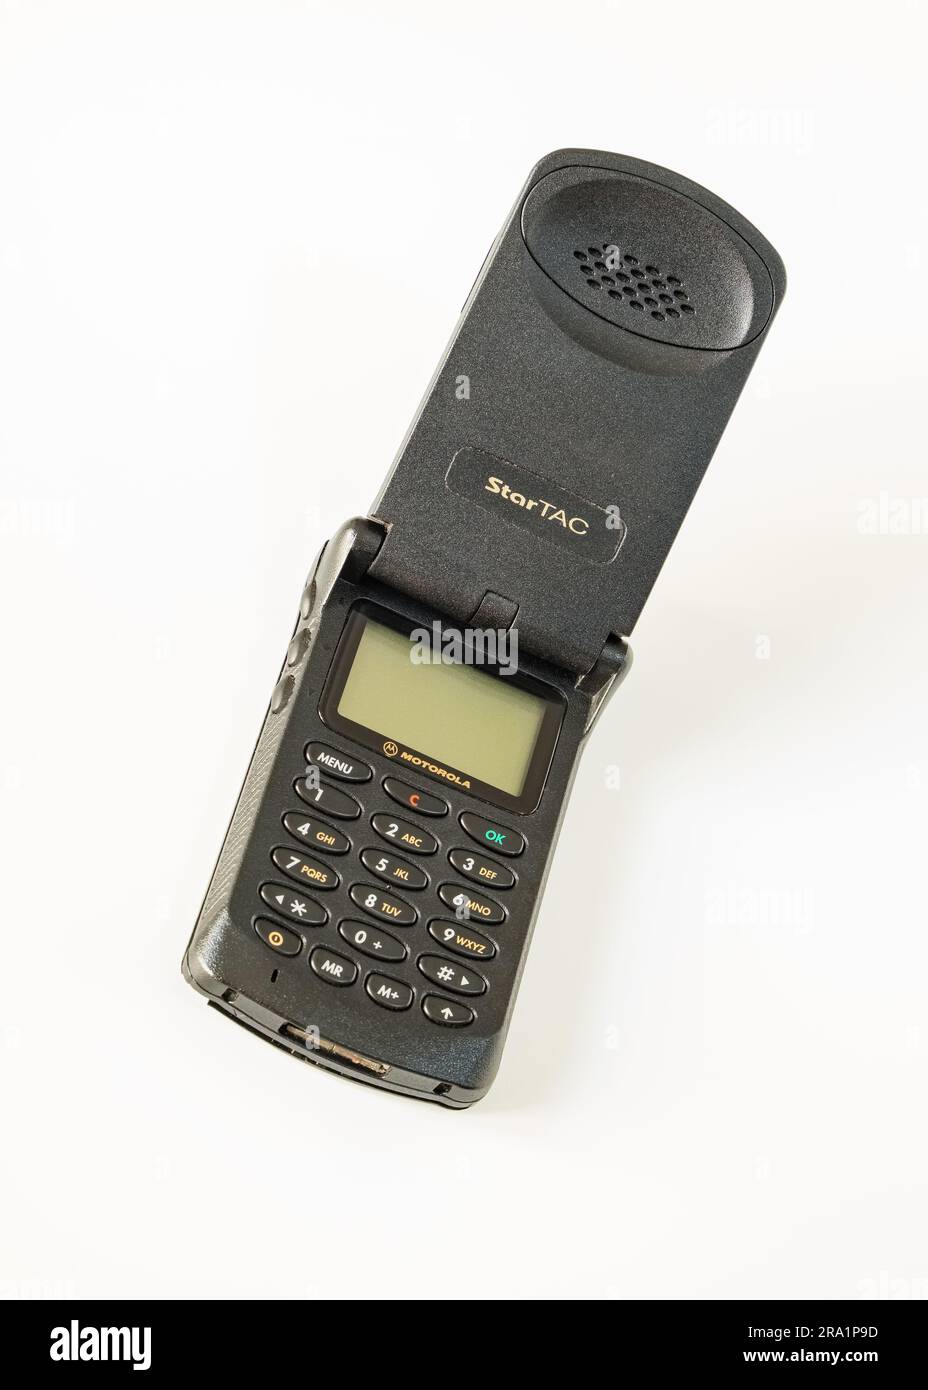 Motorola Startac, telefono cellulare aperto degli anni '90, un'icona tecnologica che ha fatto la storia della telefonia mobile nel mondo. Foto Stock